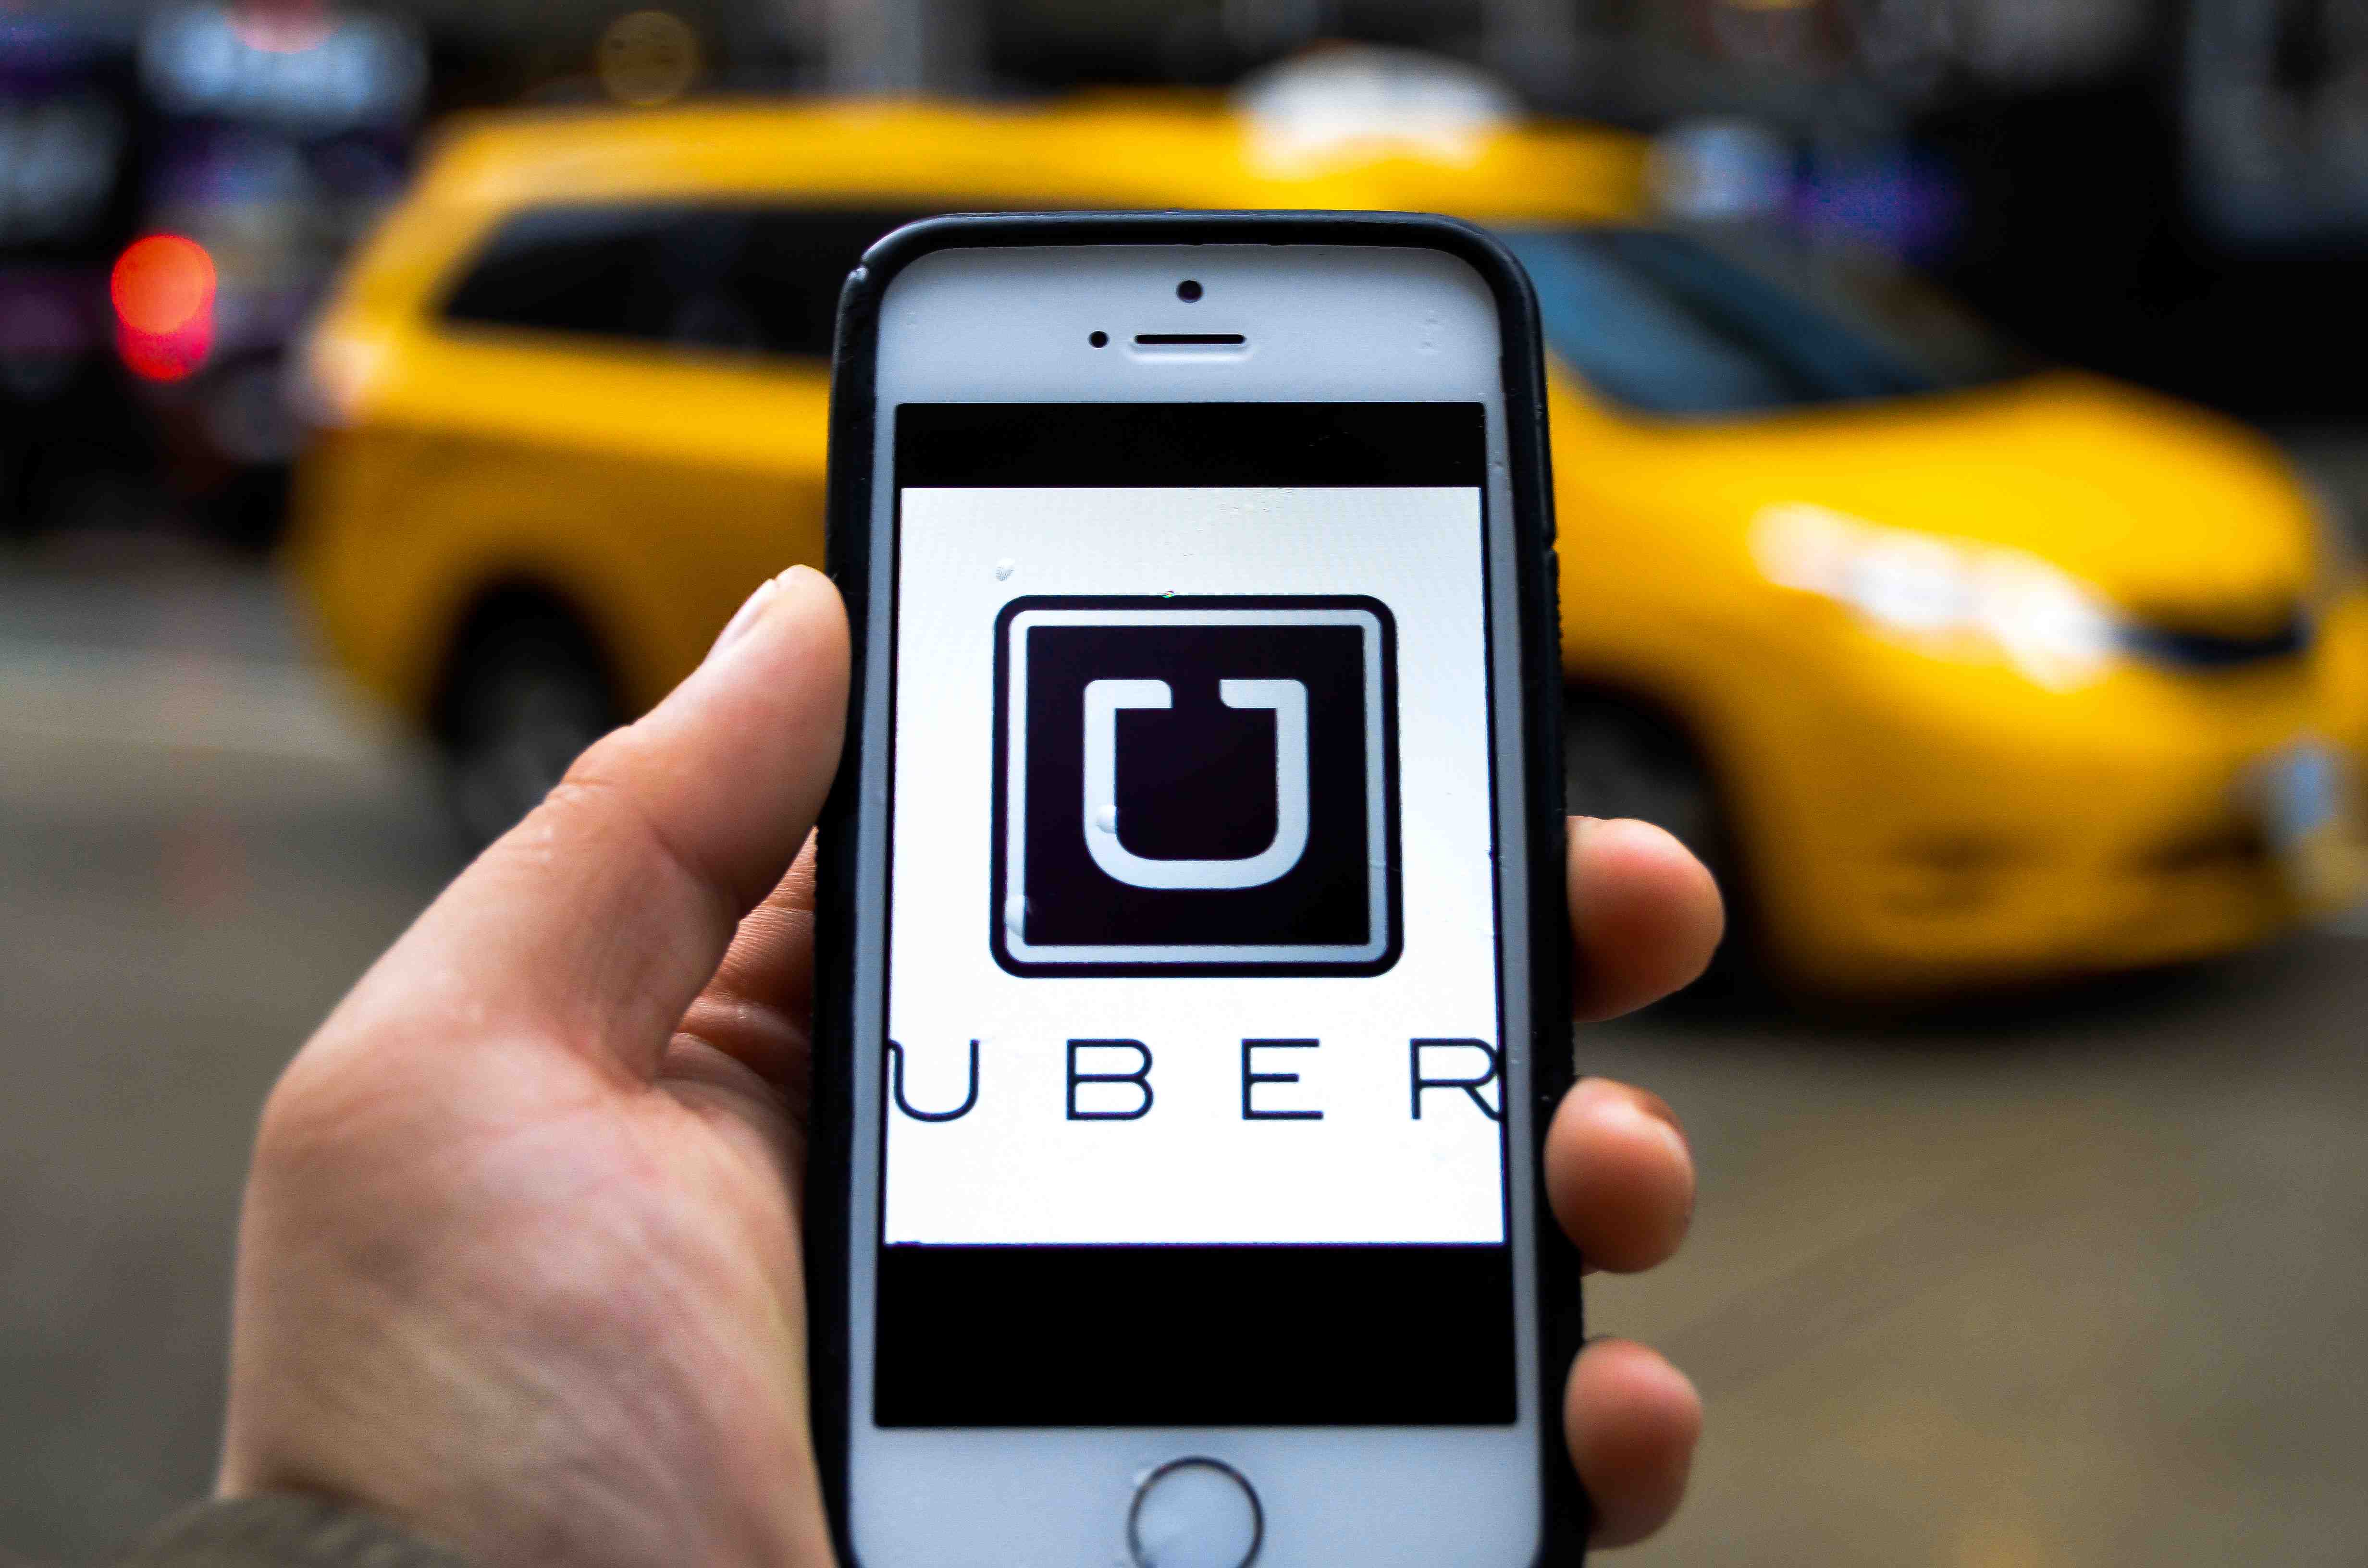 Uber in borsa in entro tre anni- l'obiettivo del Ceo Khosrowshahi